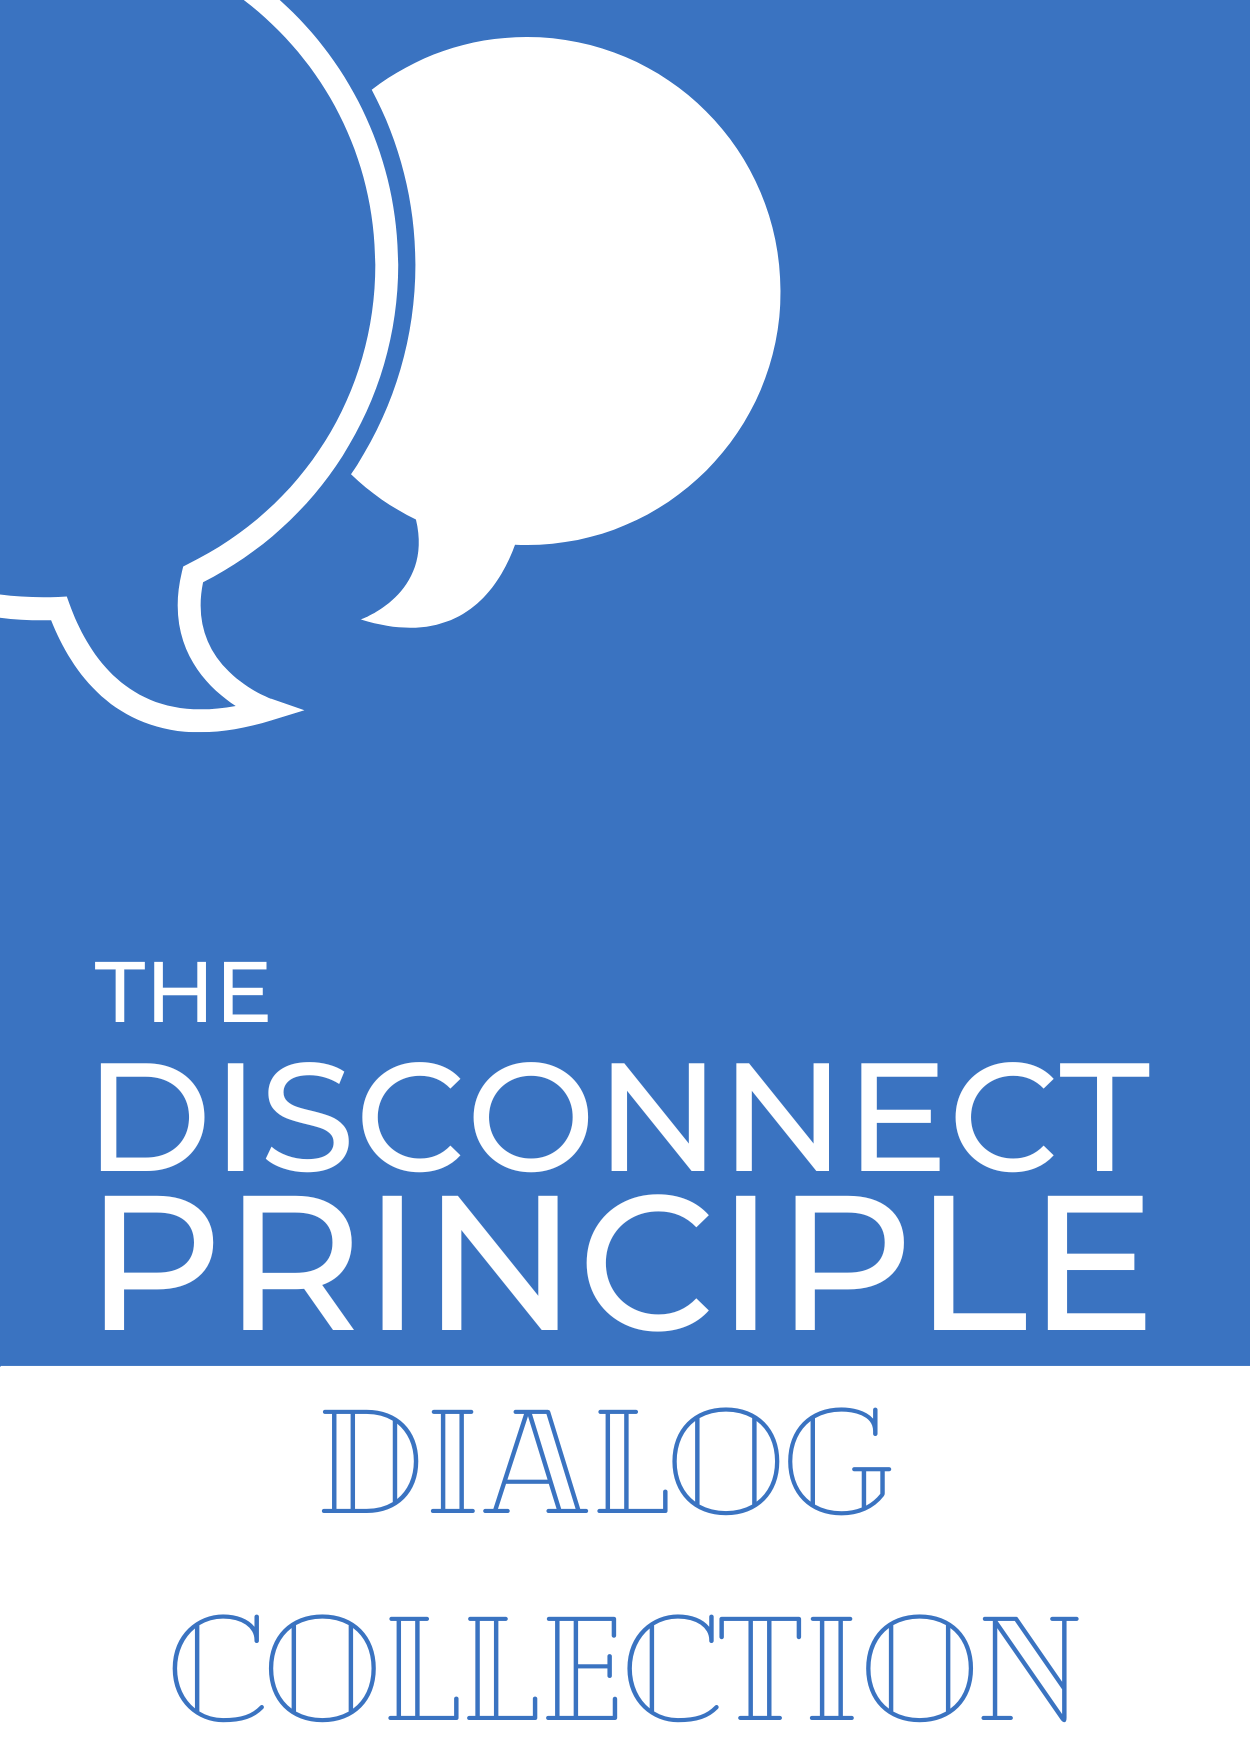 The Disconnect Principle Dialog Collection